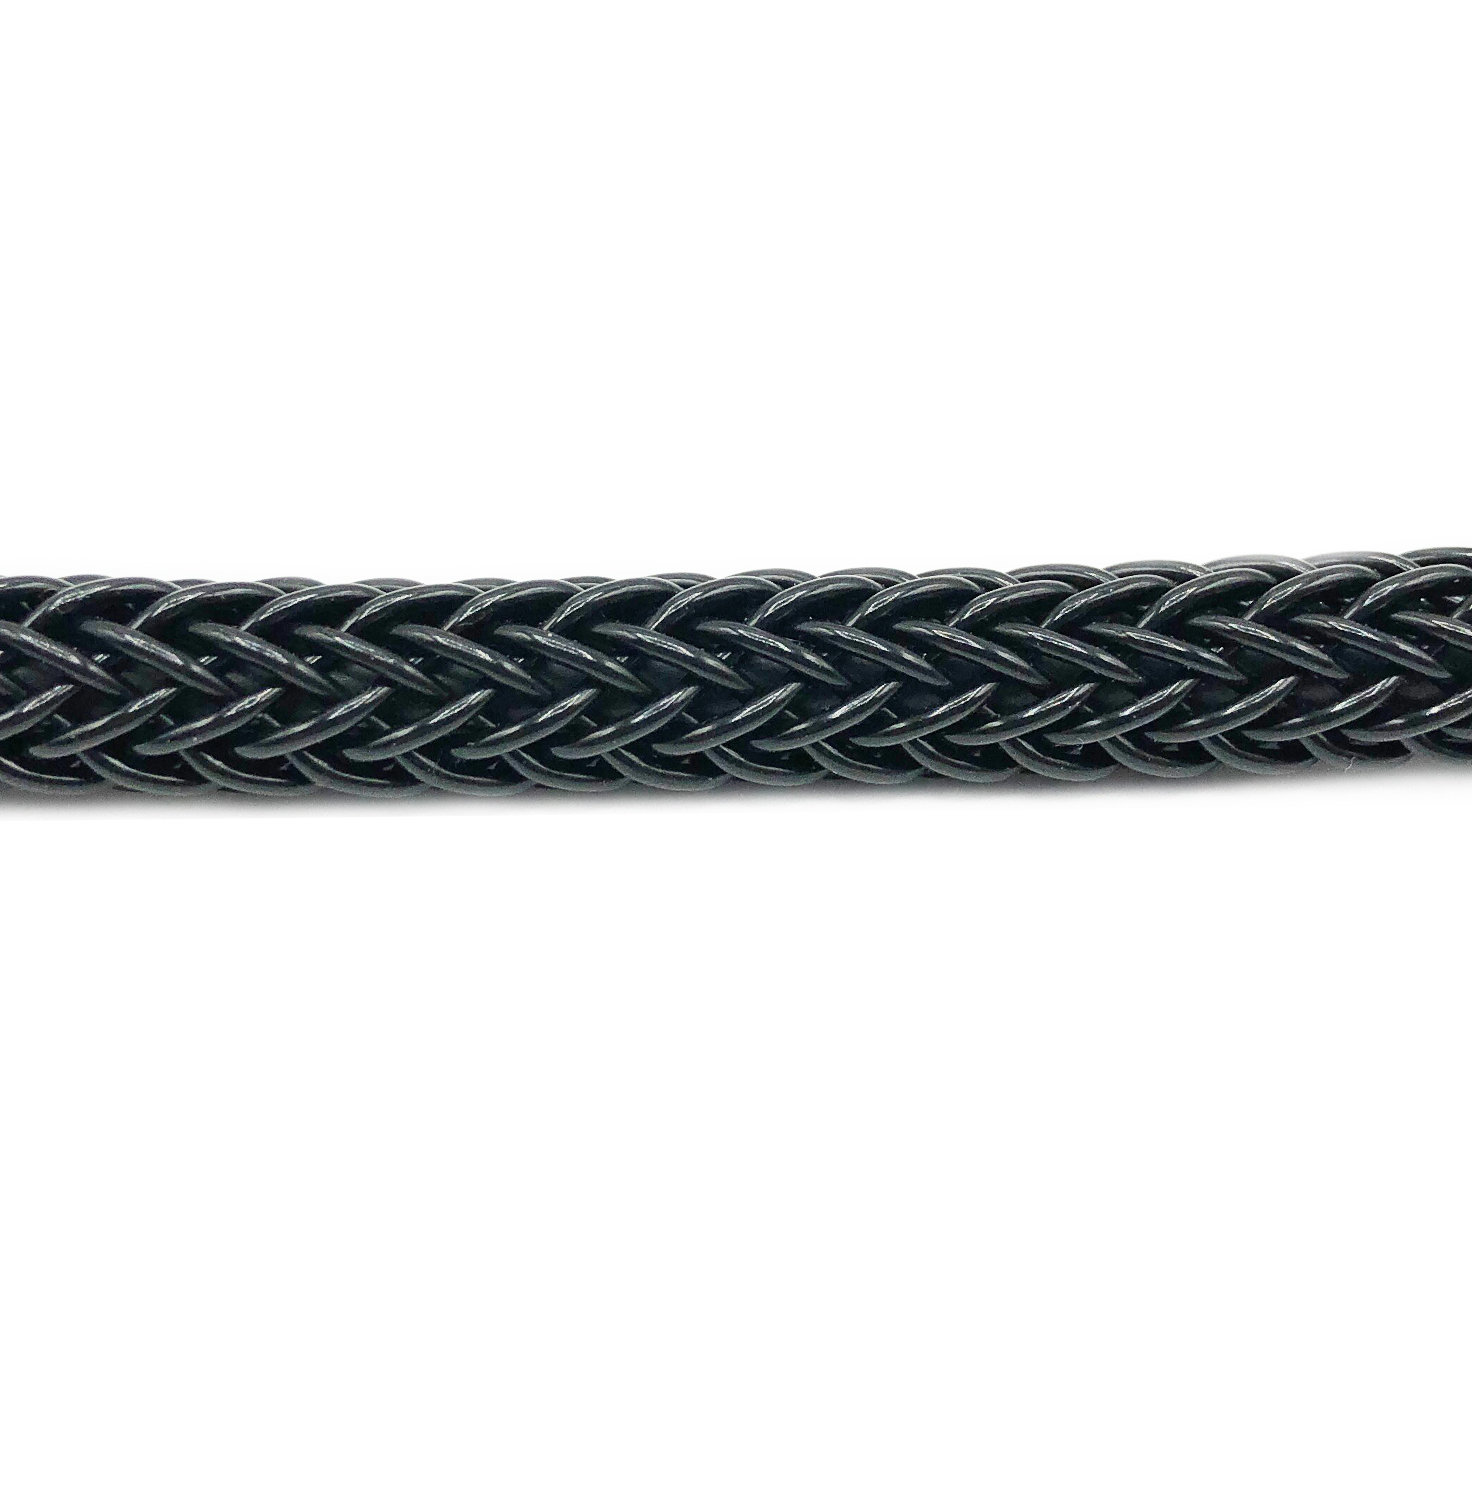 Cable plástico trenzado Scooby color negro bobina 100mts